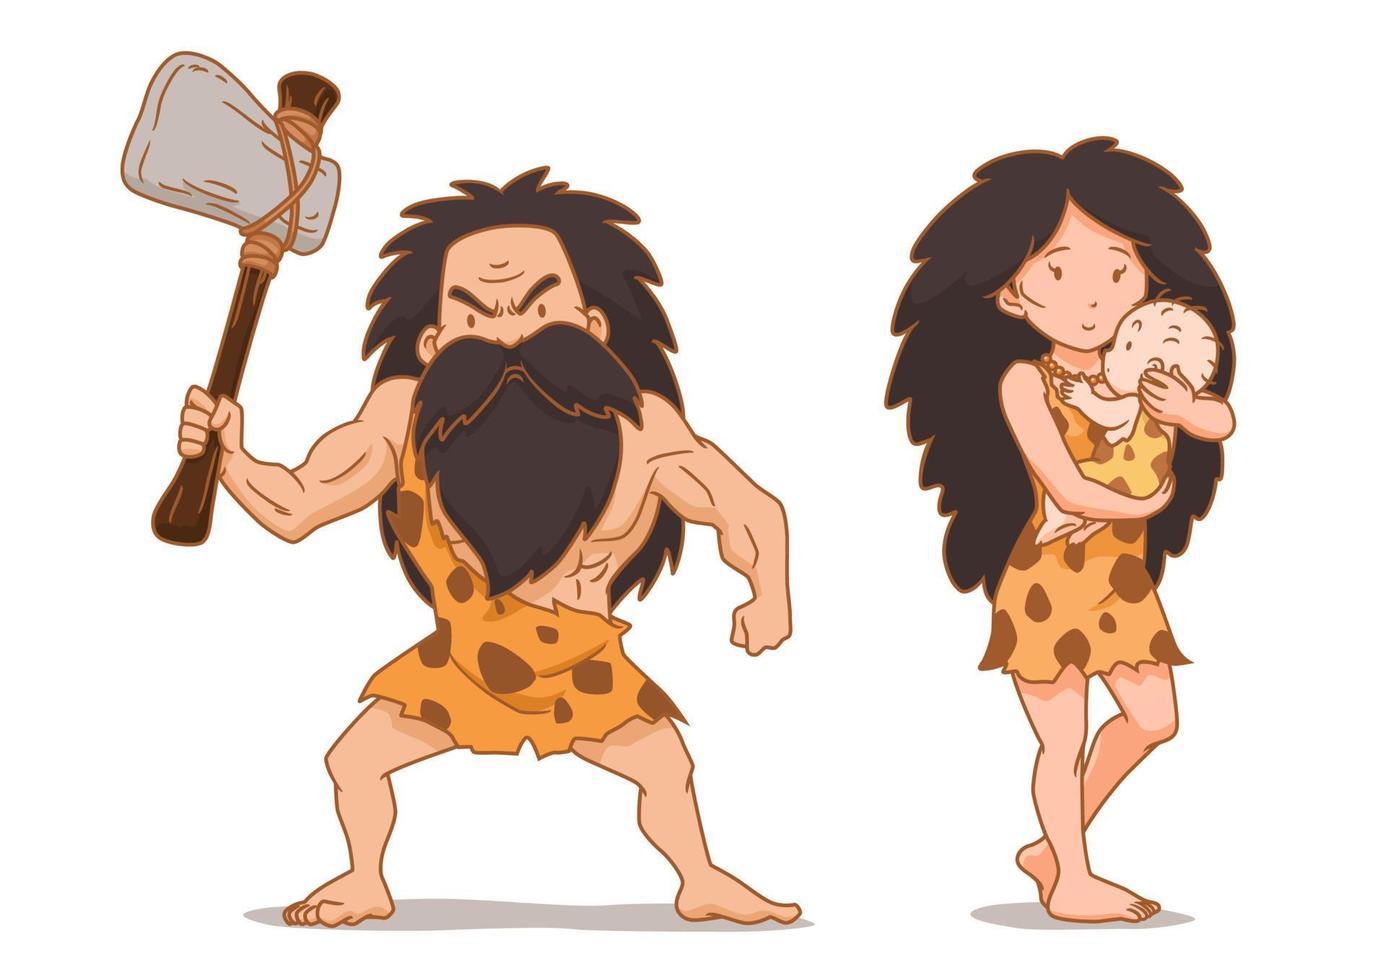 personaje de dibujos animados de hombre de las cavernas con hacha de piedra y mujer de las cavernas con bebé. vector